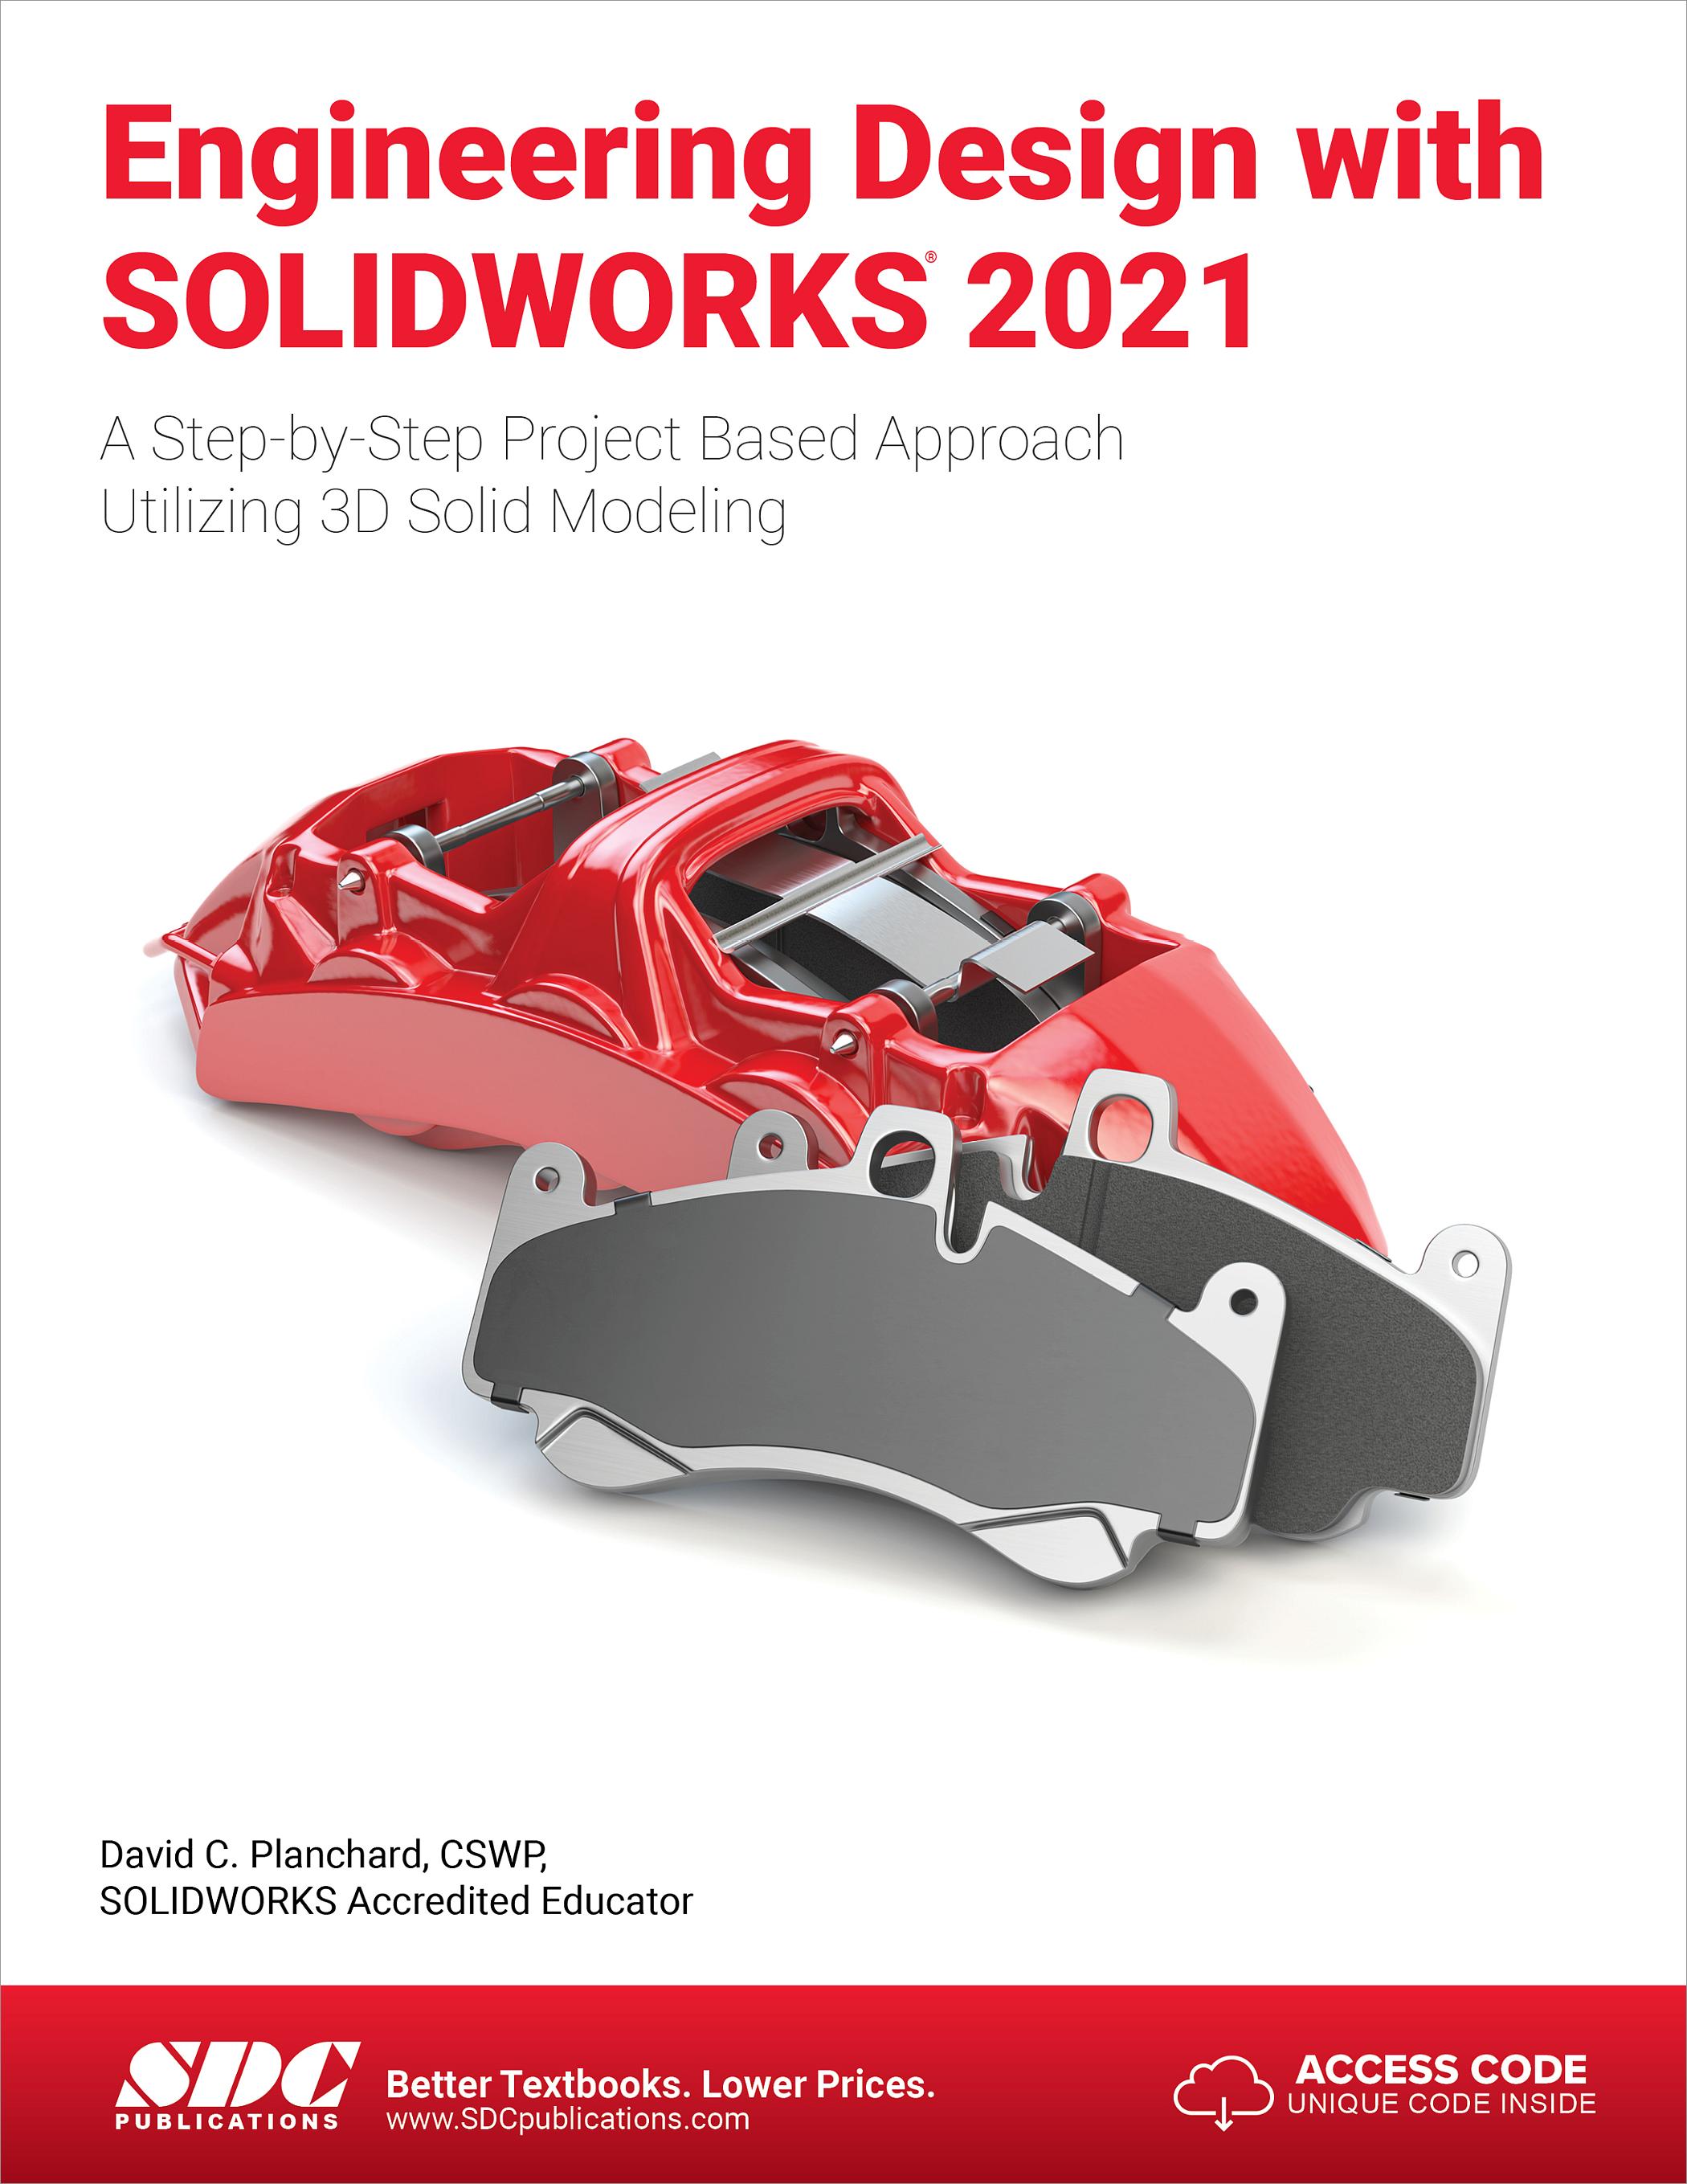 hsmworks solidworks 2021